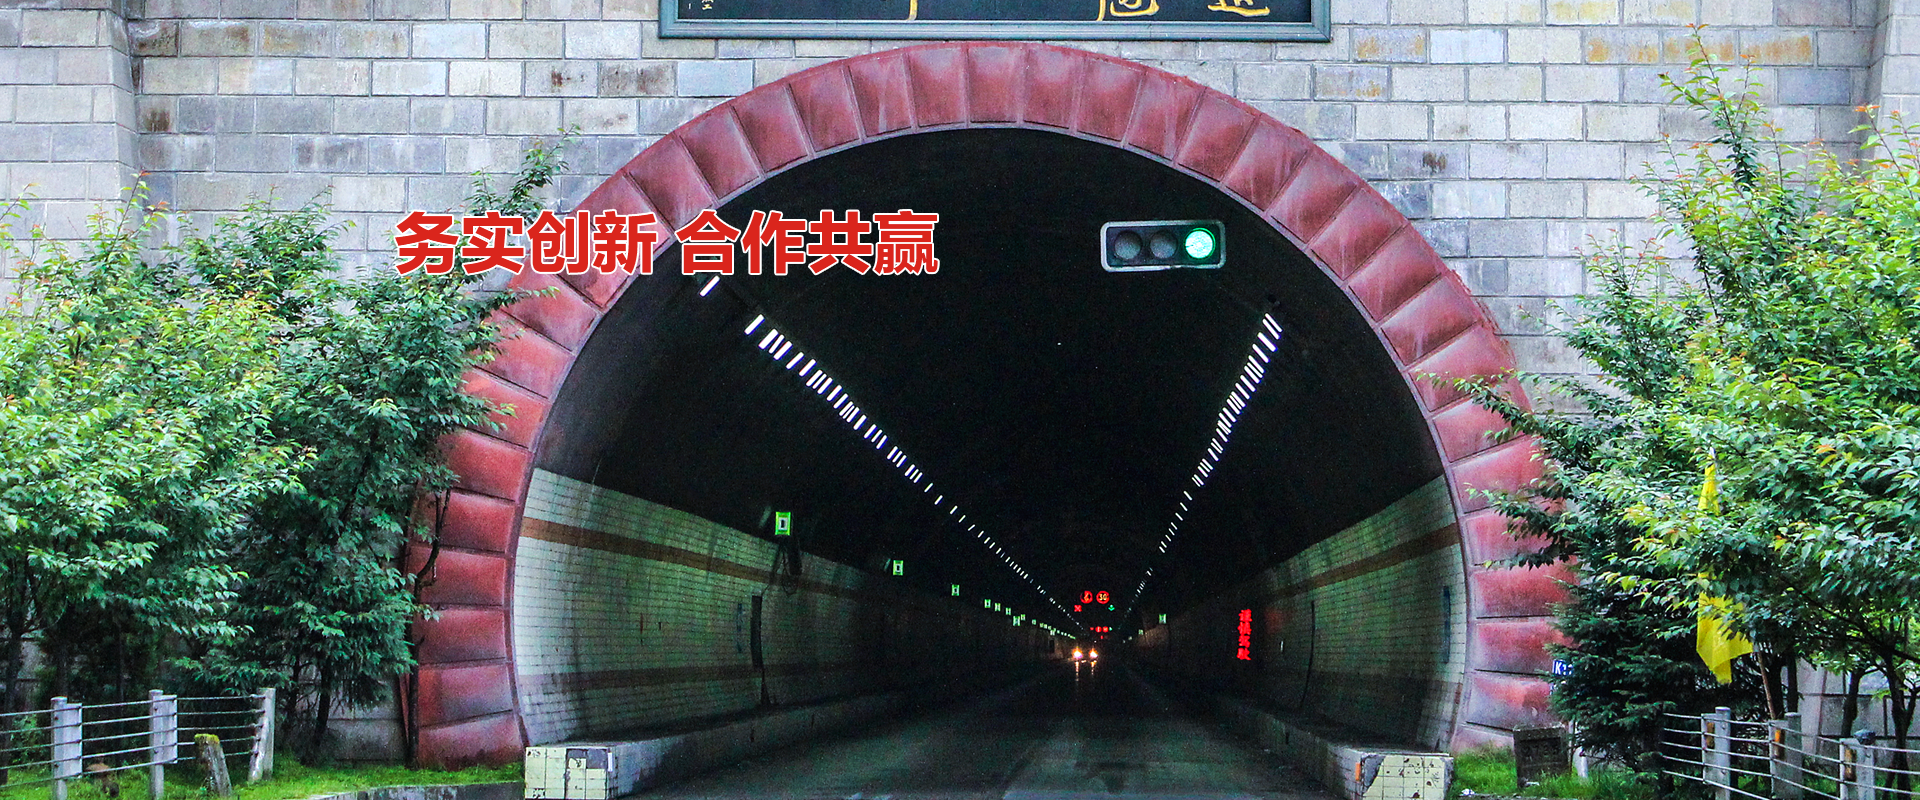 興坤隧道